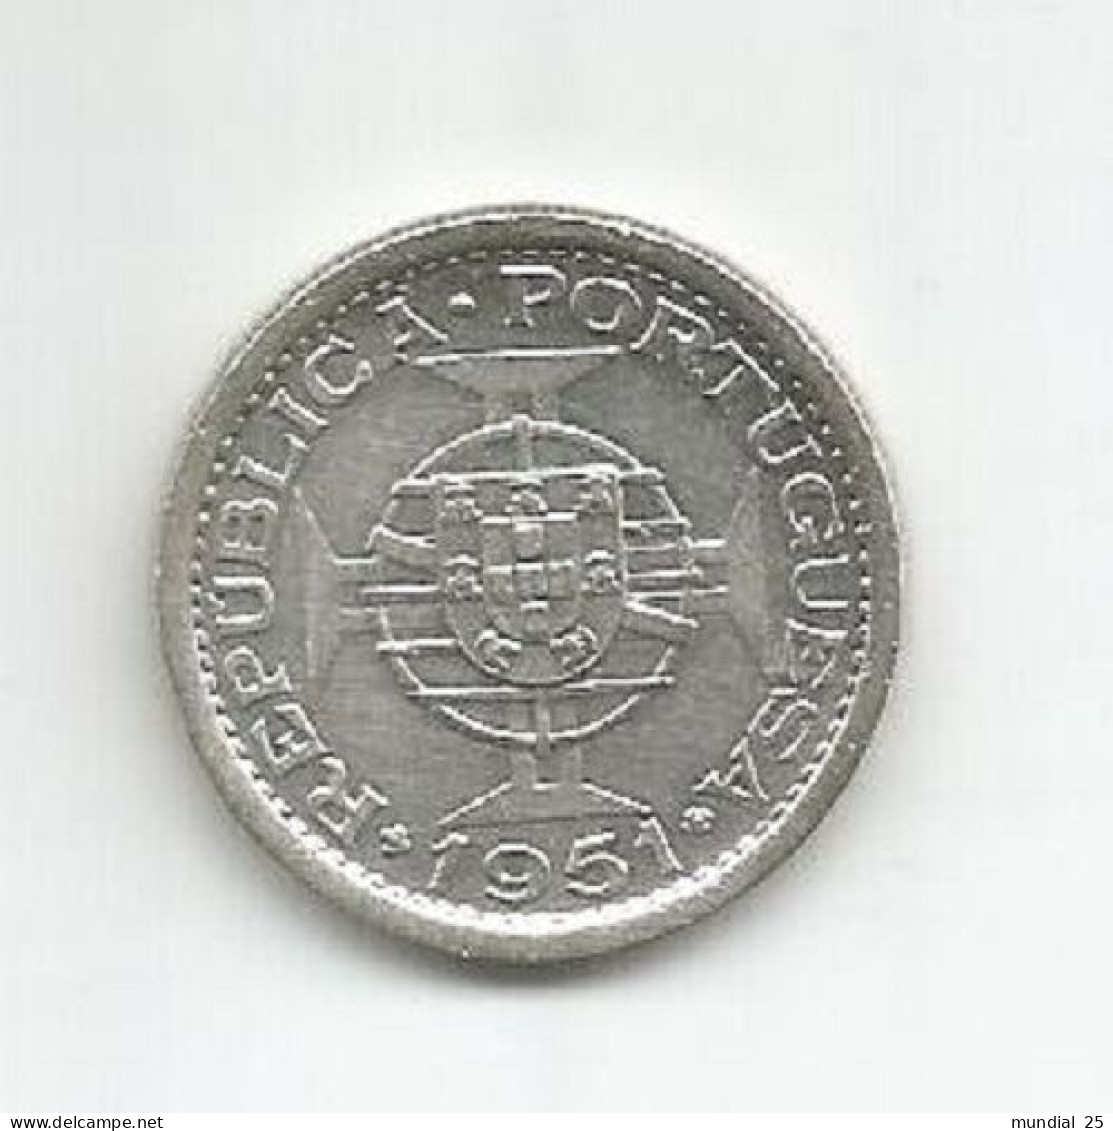 SAO TOME AND PRINCIPE PORTUGAL 5$00 ESCUDOS 1951 SILVER - Sao Tome And Principe